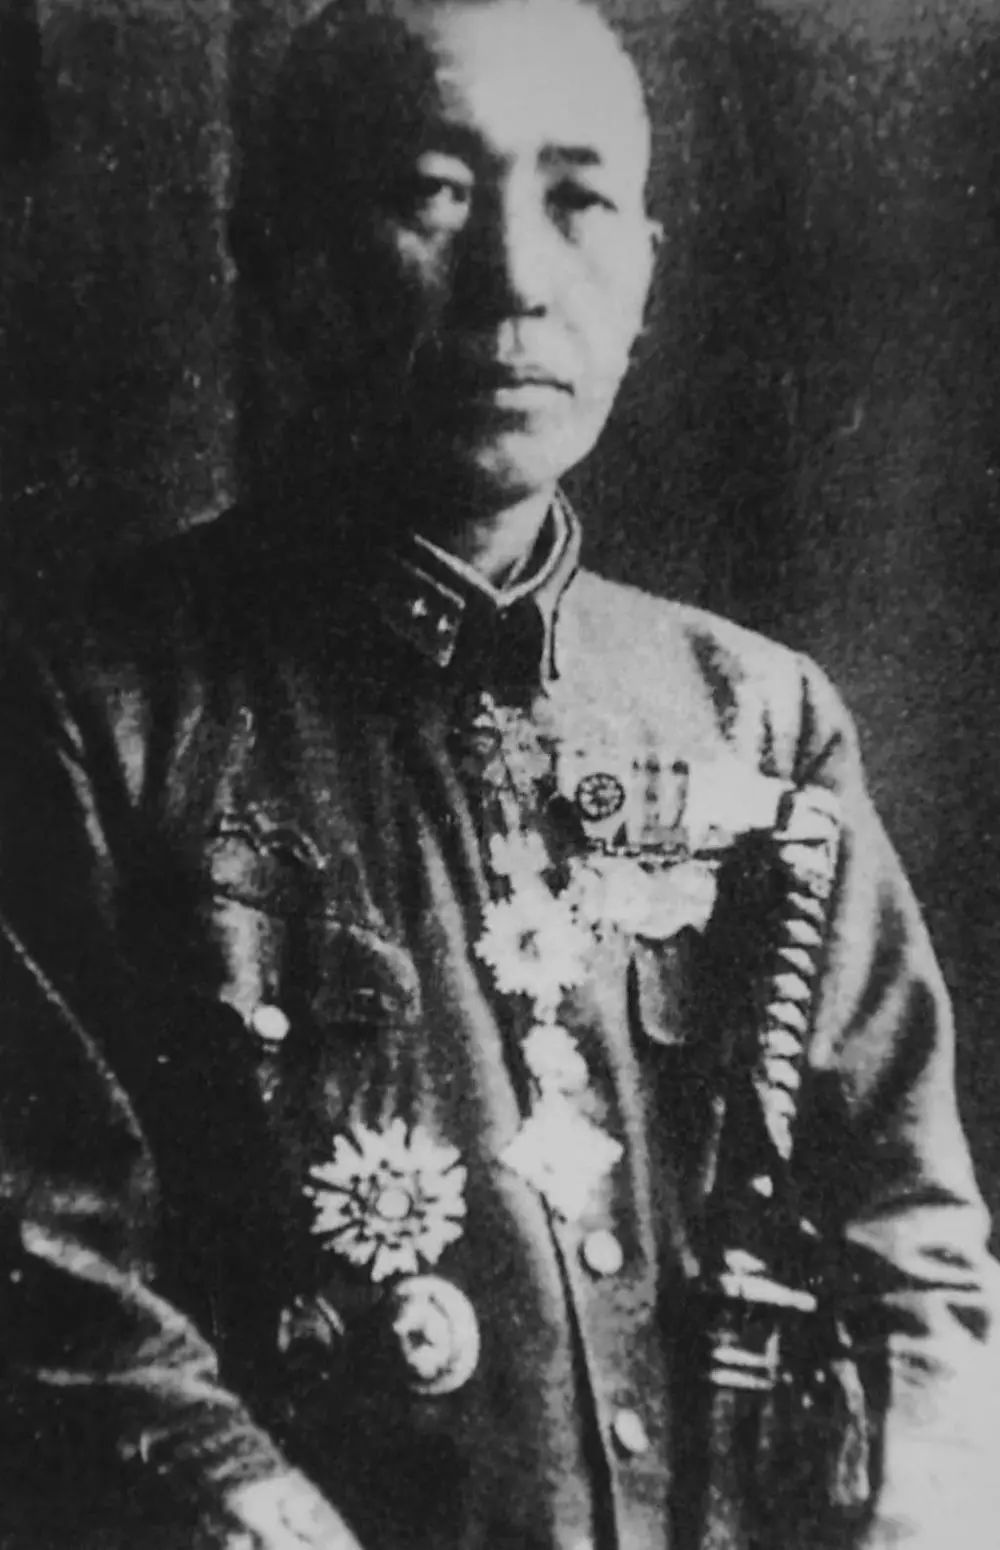 图为1946年,原731部队部队长石井四郎满身佩戴着特级勋章